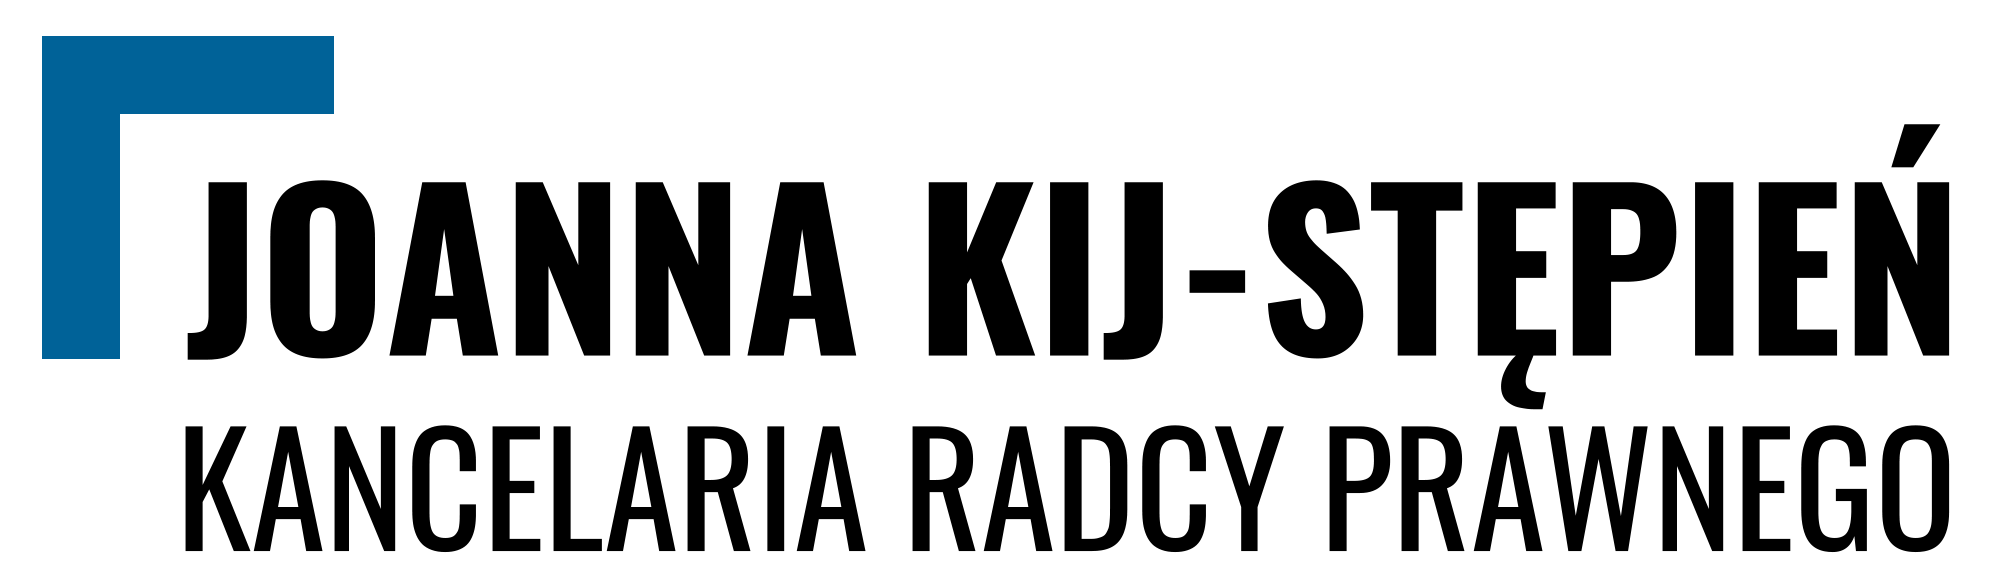 Kancelaria logo